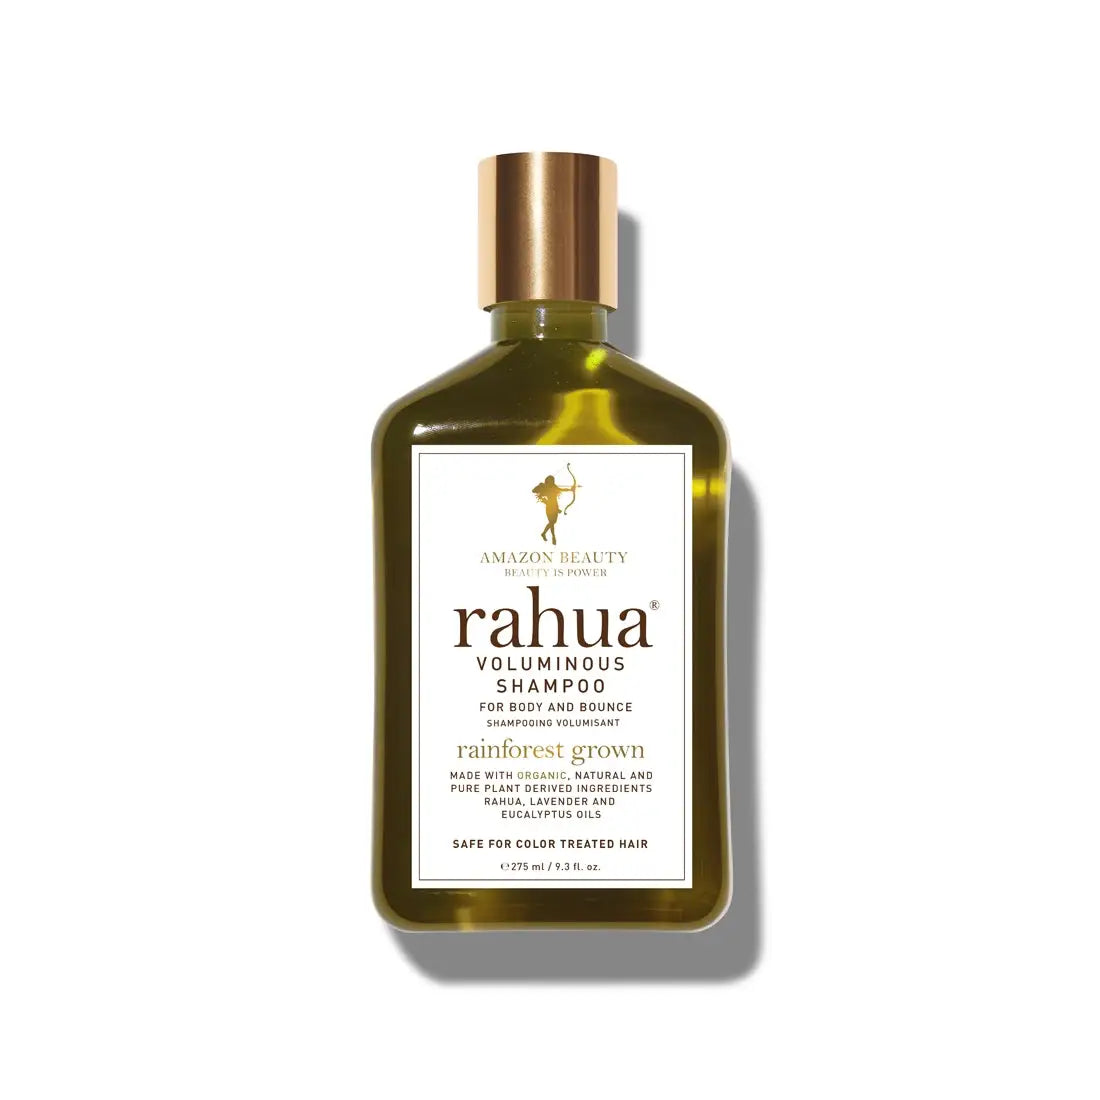 Rahua Voluminous Shampoo 275ml - Free Shipping Worldwide